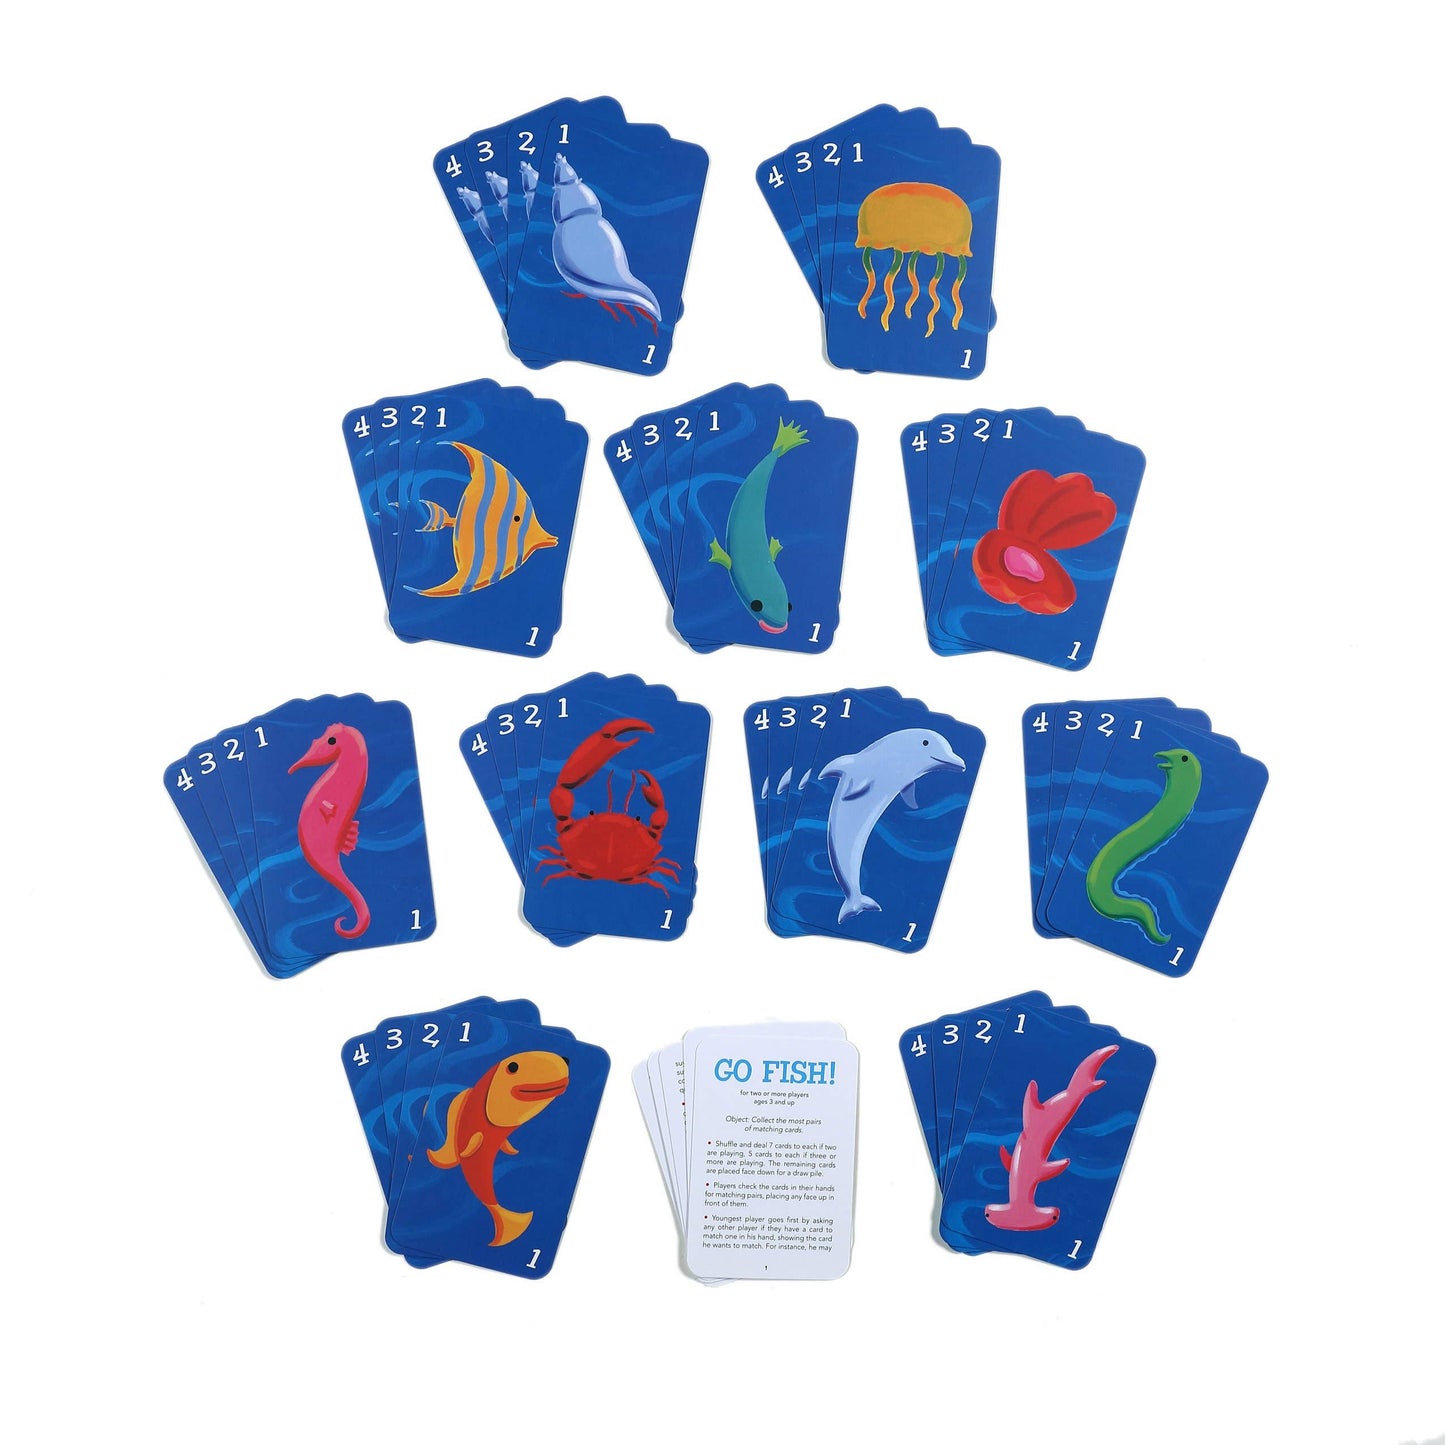 eeBoo - Go Fish Playing Cards